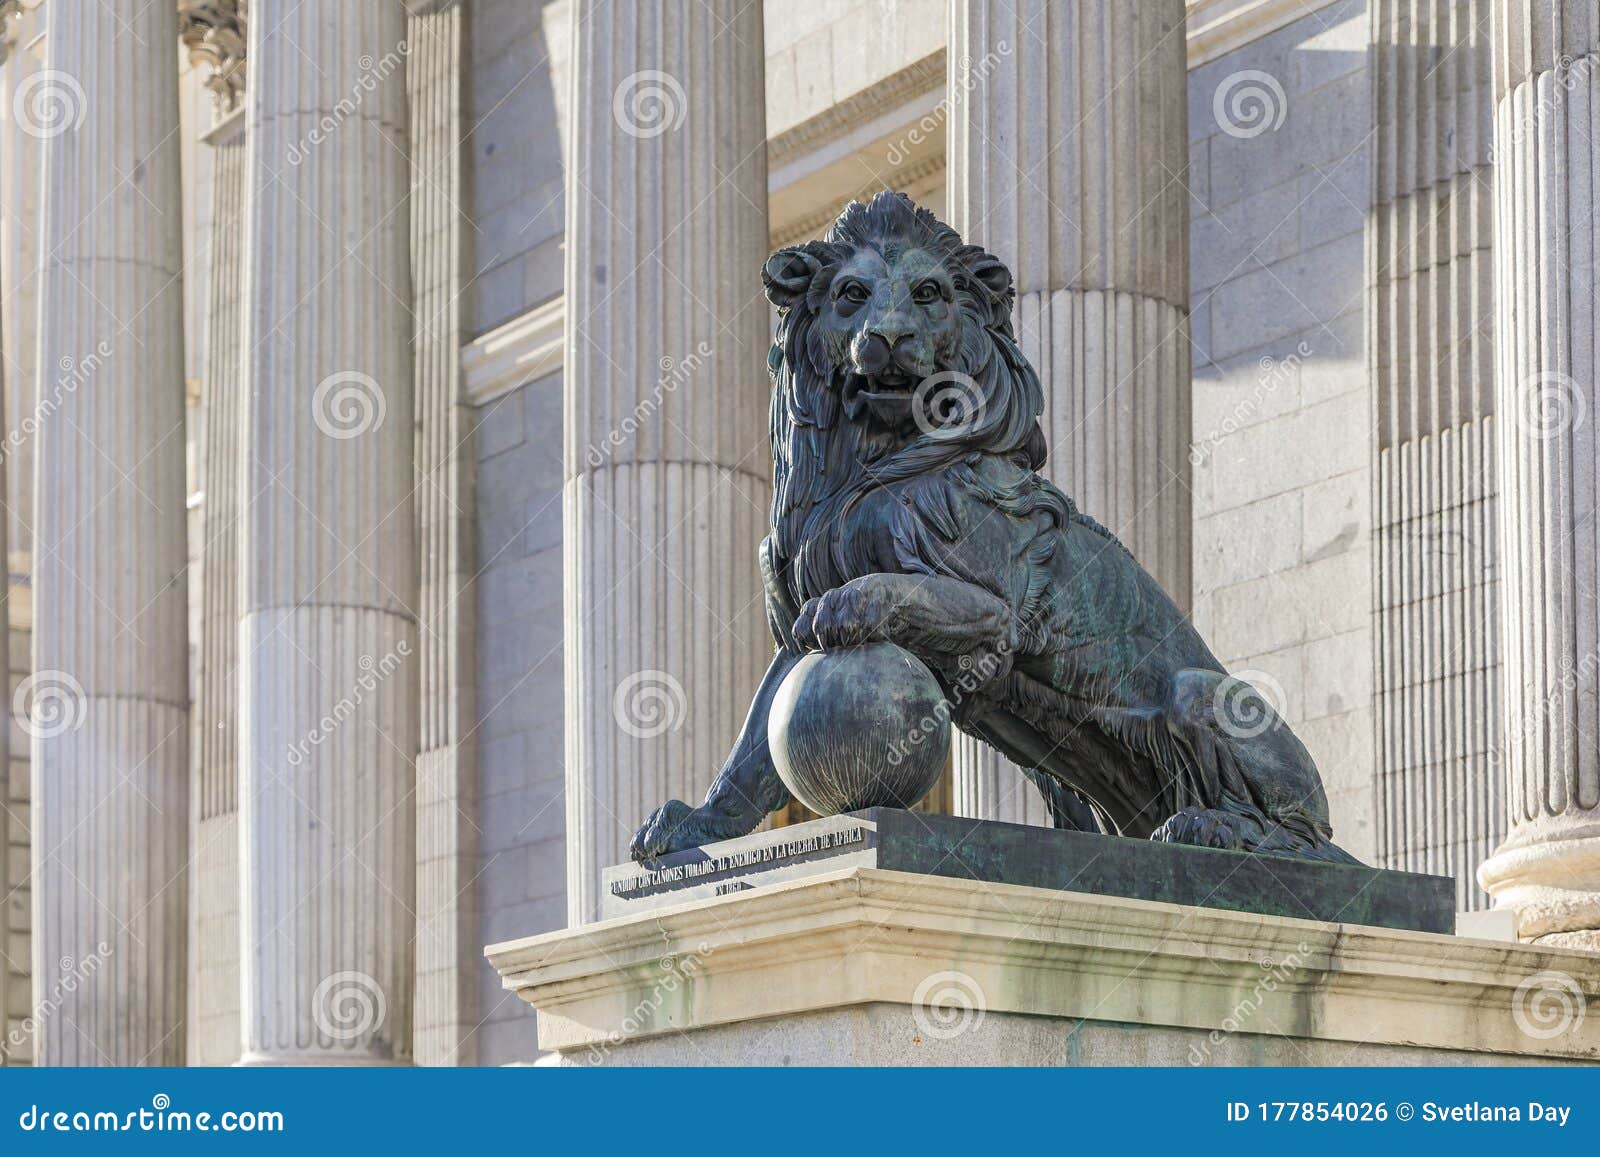 lion sculpture by the congress of deputies - congreso de los diputados spanish parliament, palacio de las cortes, madrid